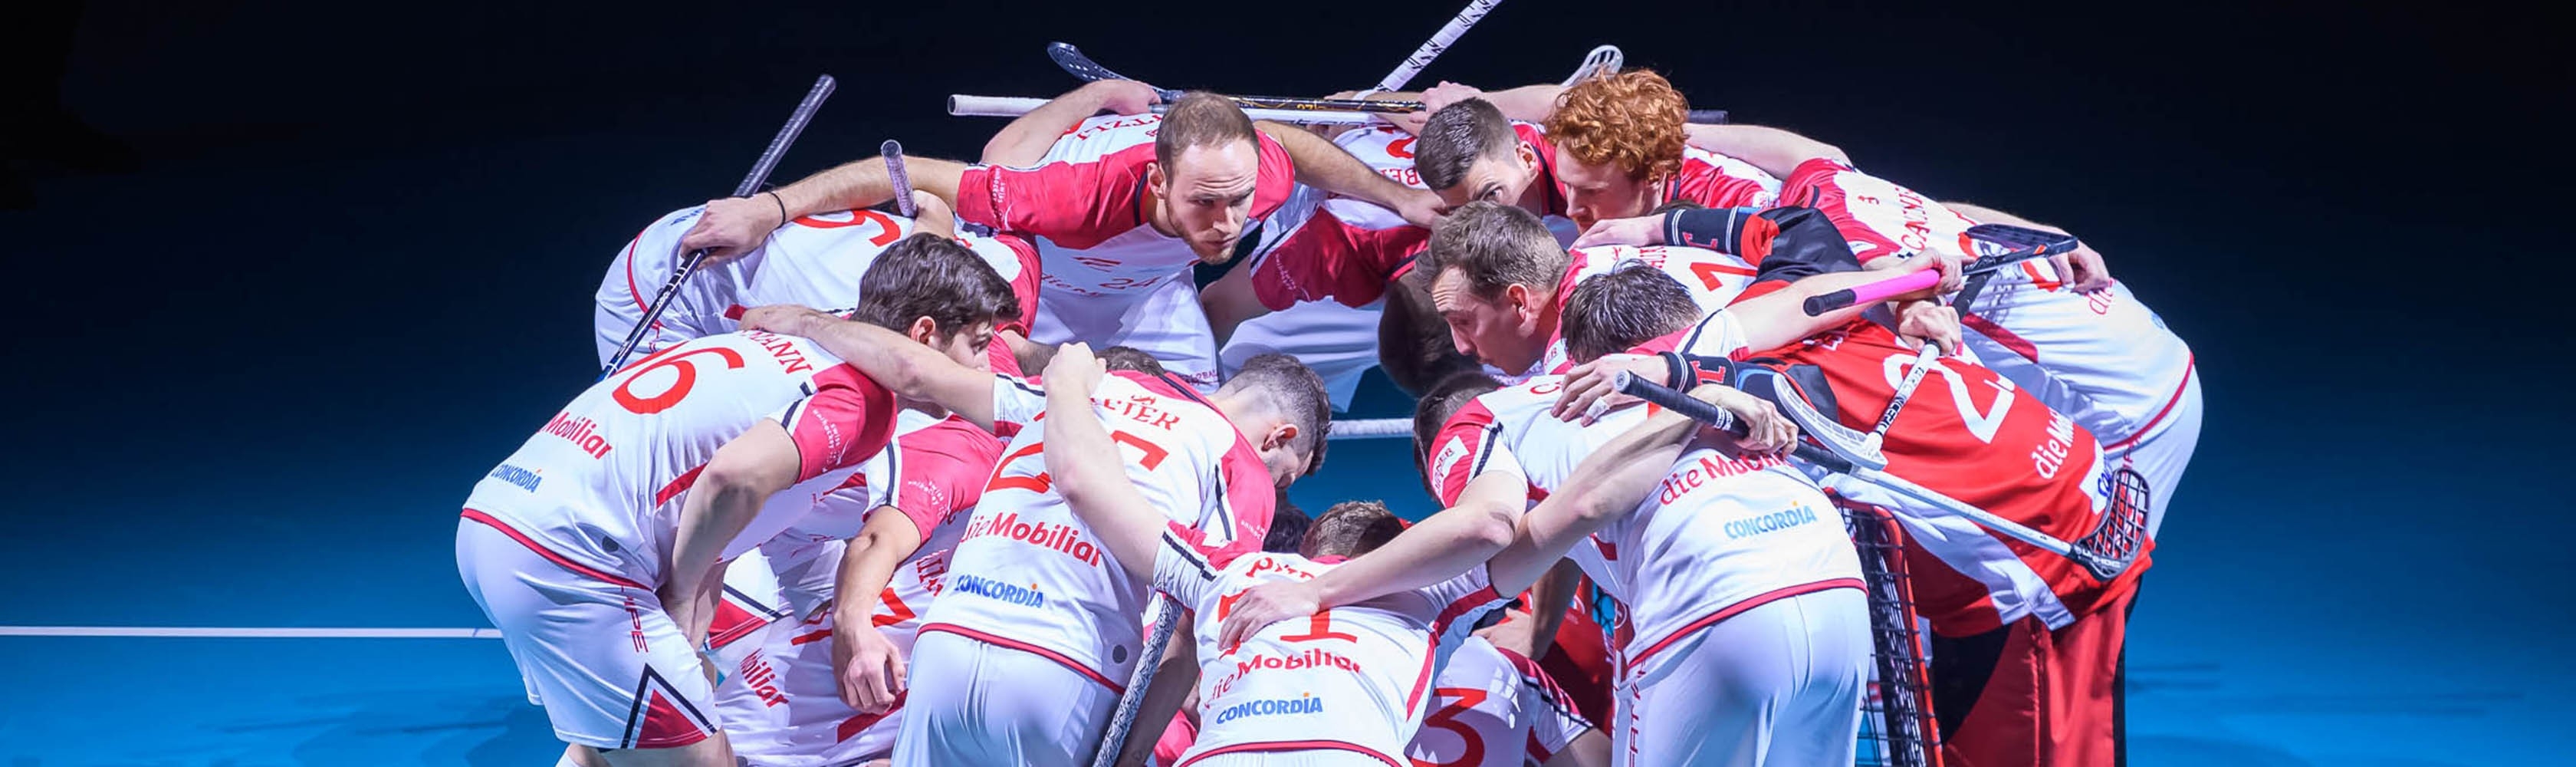 Luca Graf et ses coéquipiers de l'équipe nationale suisse d'unihockey s'encouragent mutuellement avant le match.